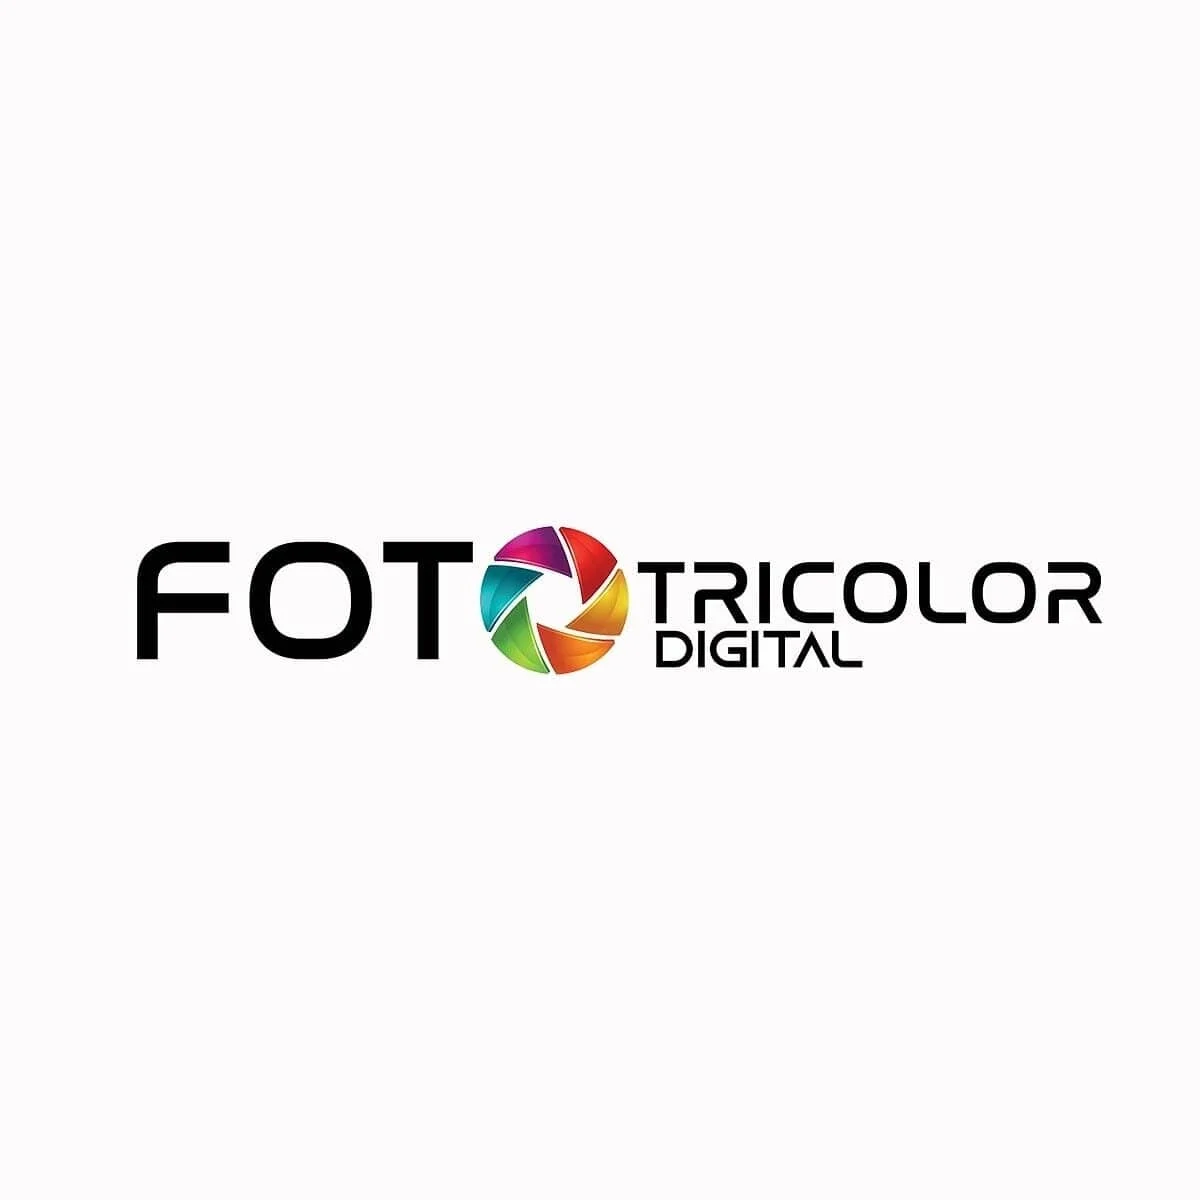 Estudios Fotográficos-foto-tricolor-digital-32654